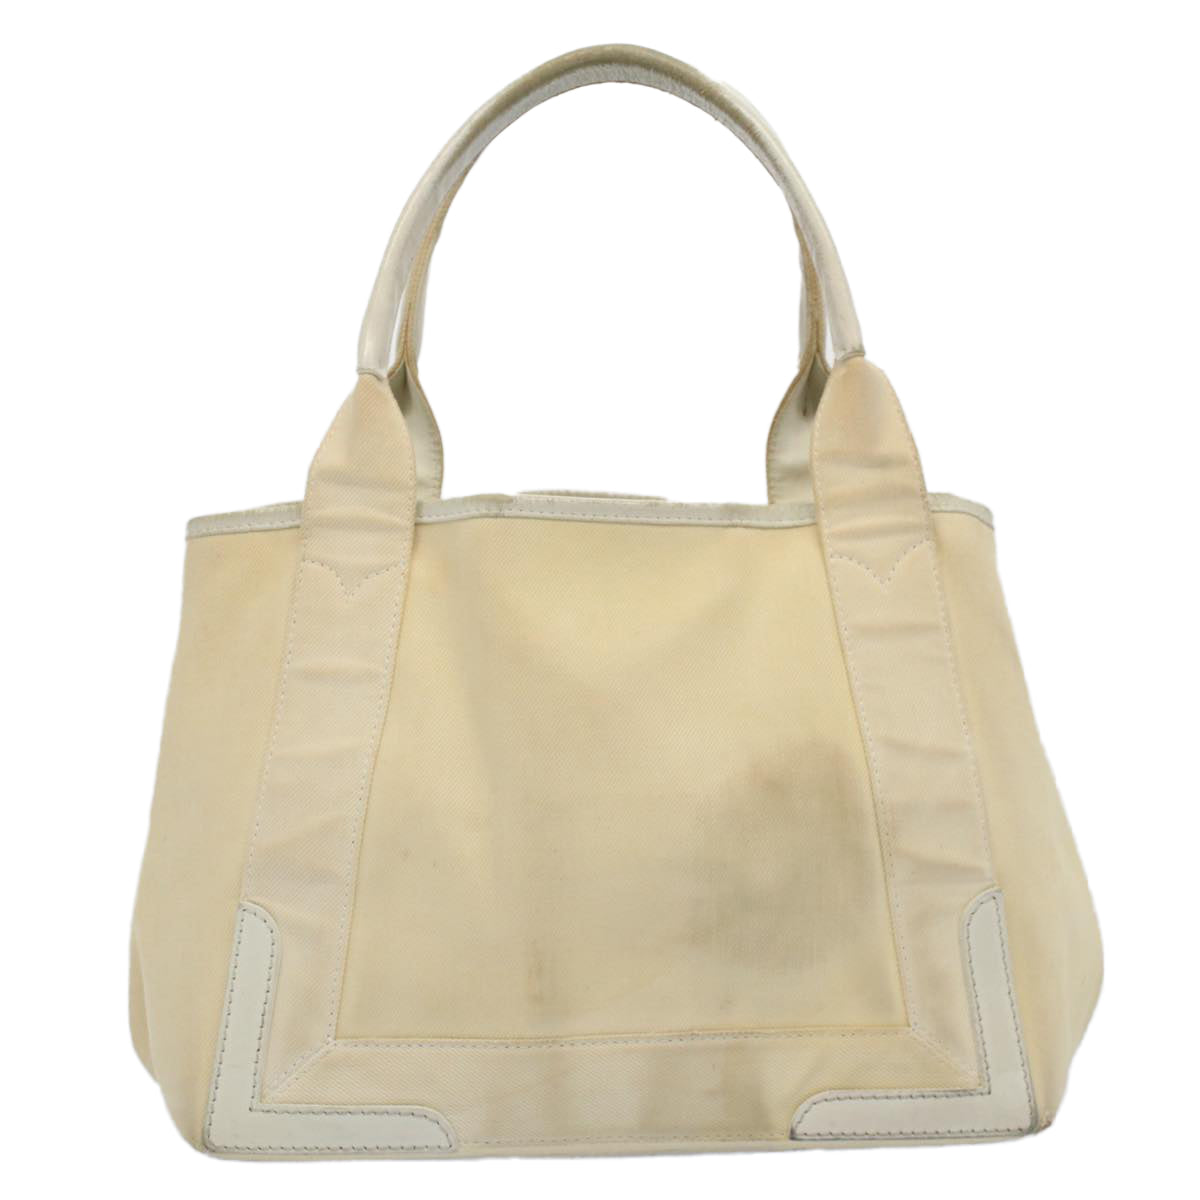 BALENCIAGA Tote Bag Canvas White 339933 Auth bs8347